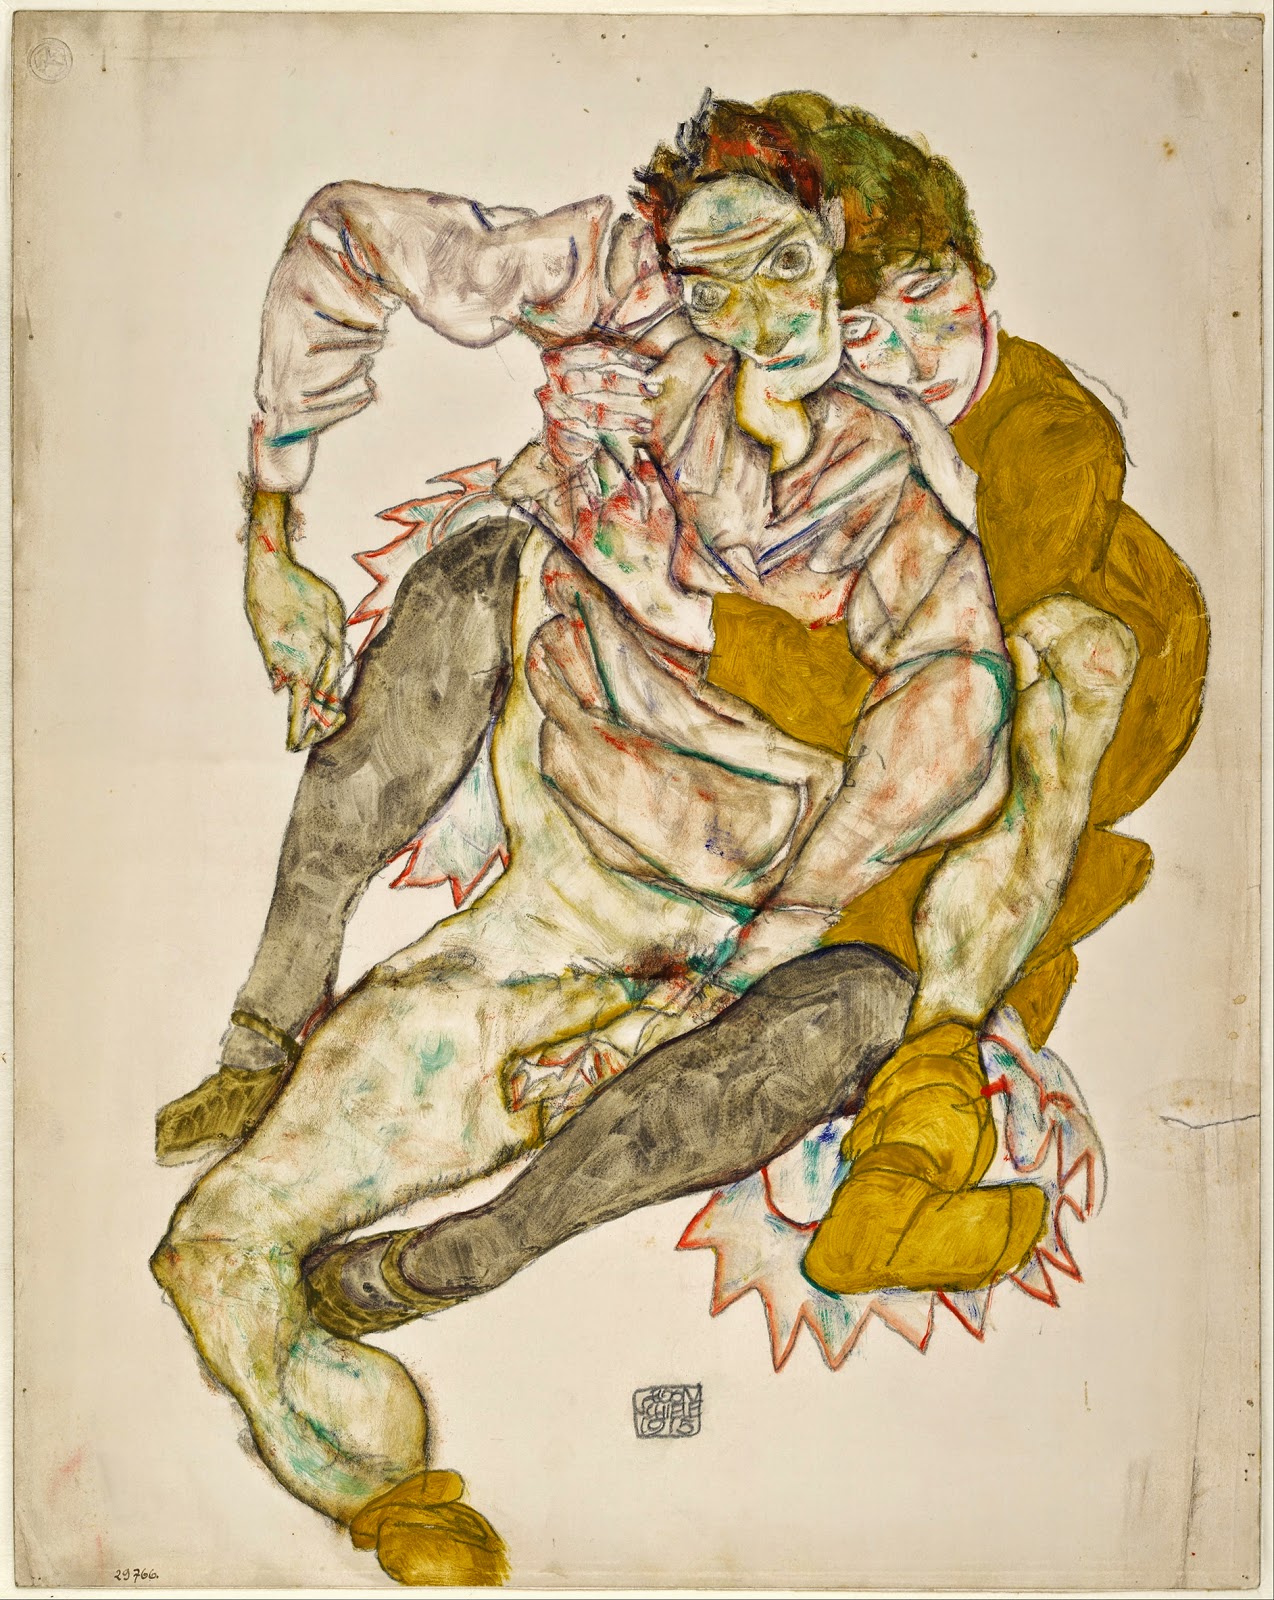 Egon+Schiele-1890-1918 (44).jpg